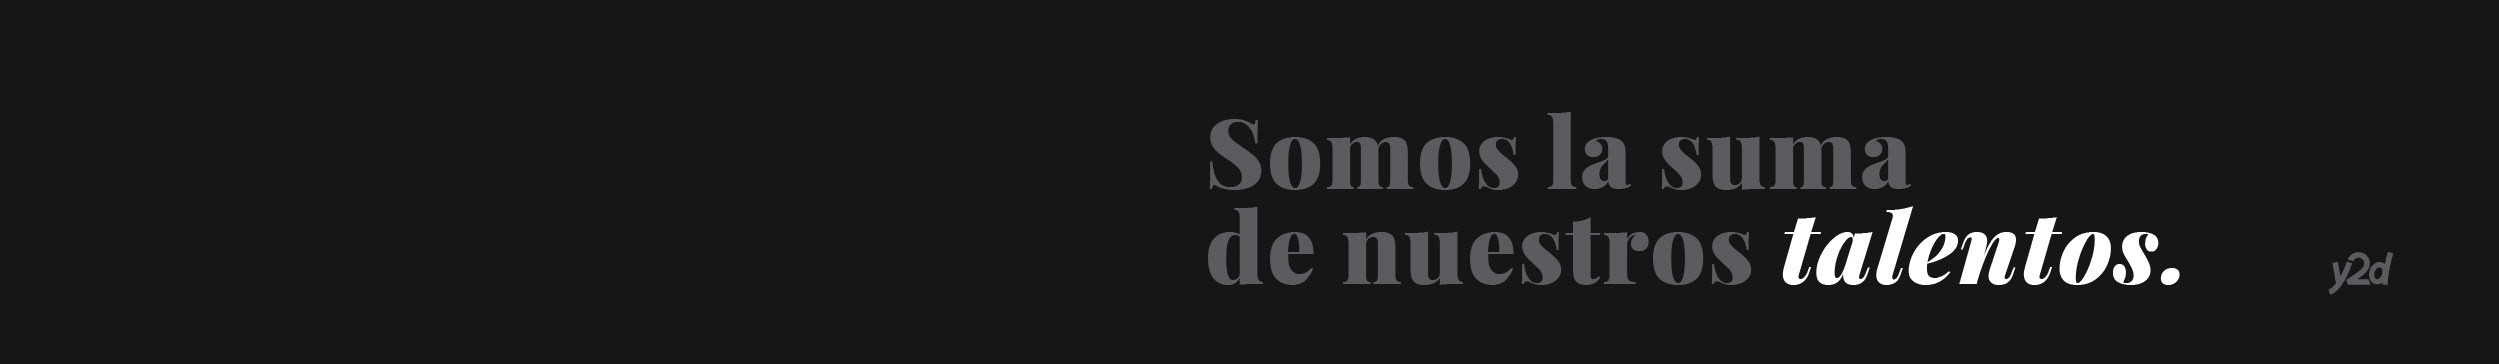 y2d Agencia's profile banner